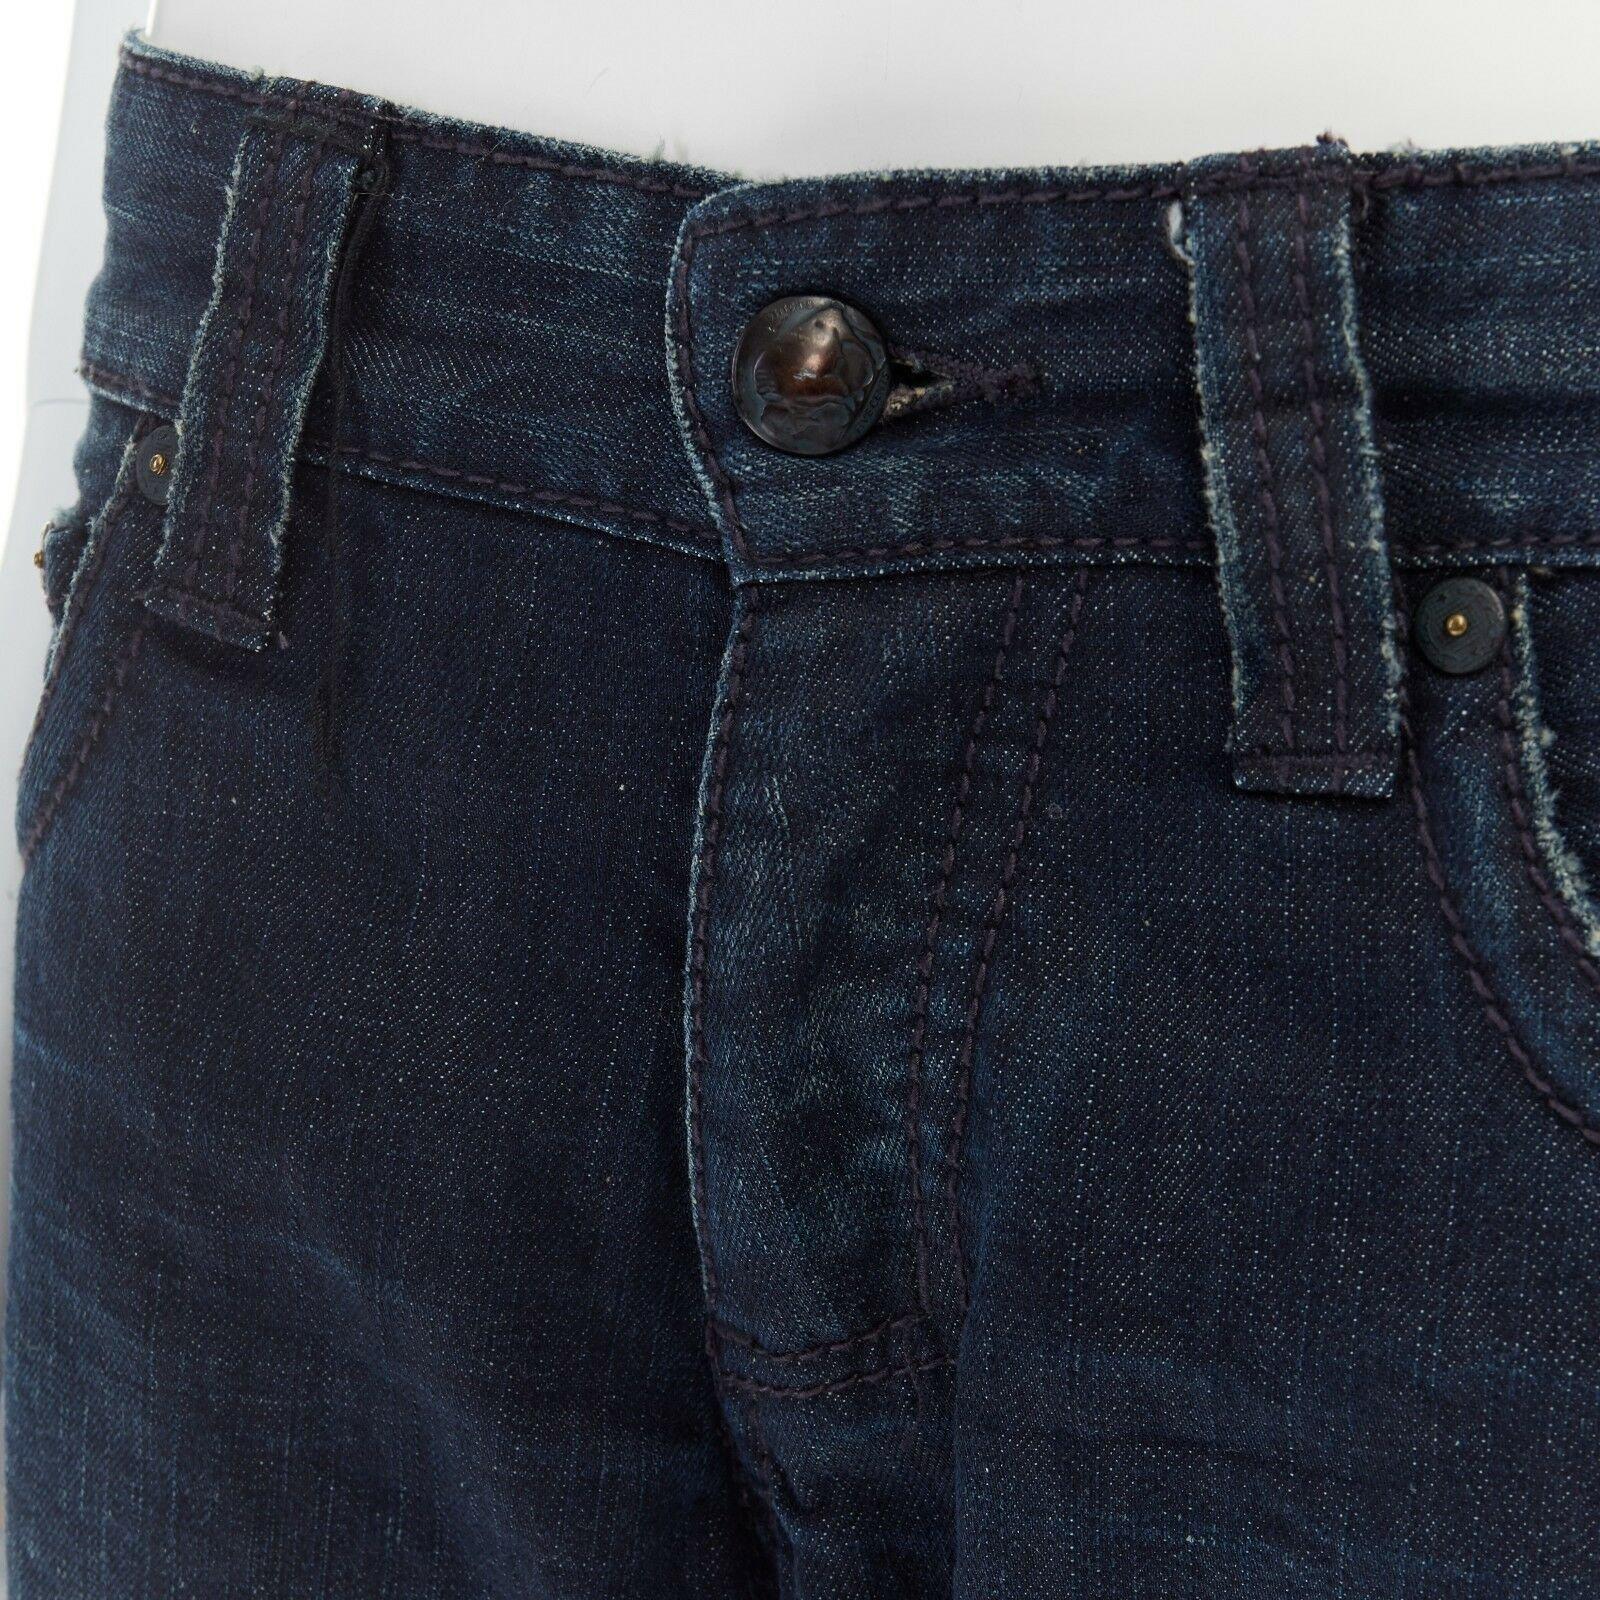 STITCH'S Black Label dark washed denim straight leg jeans 29